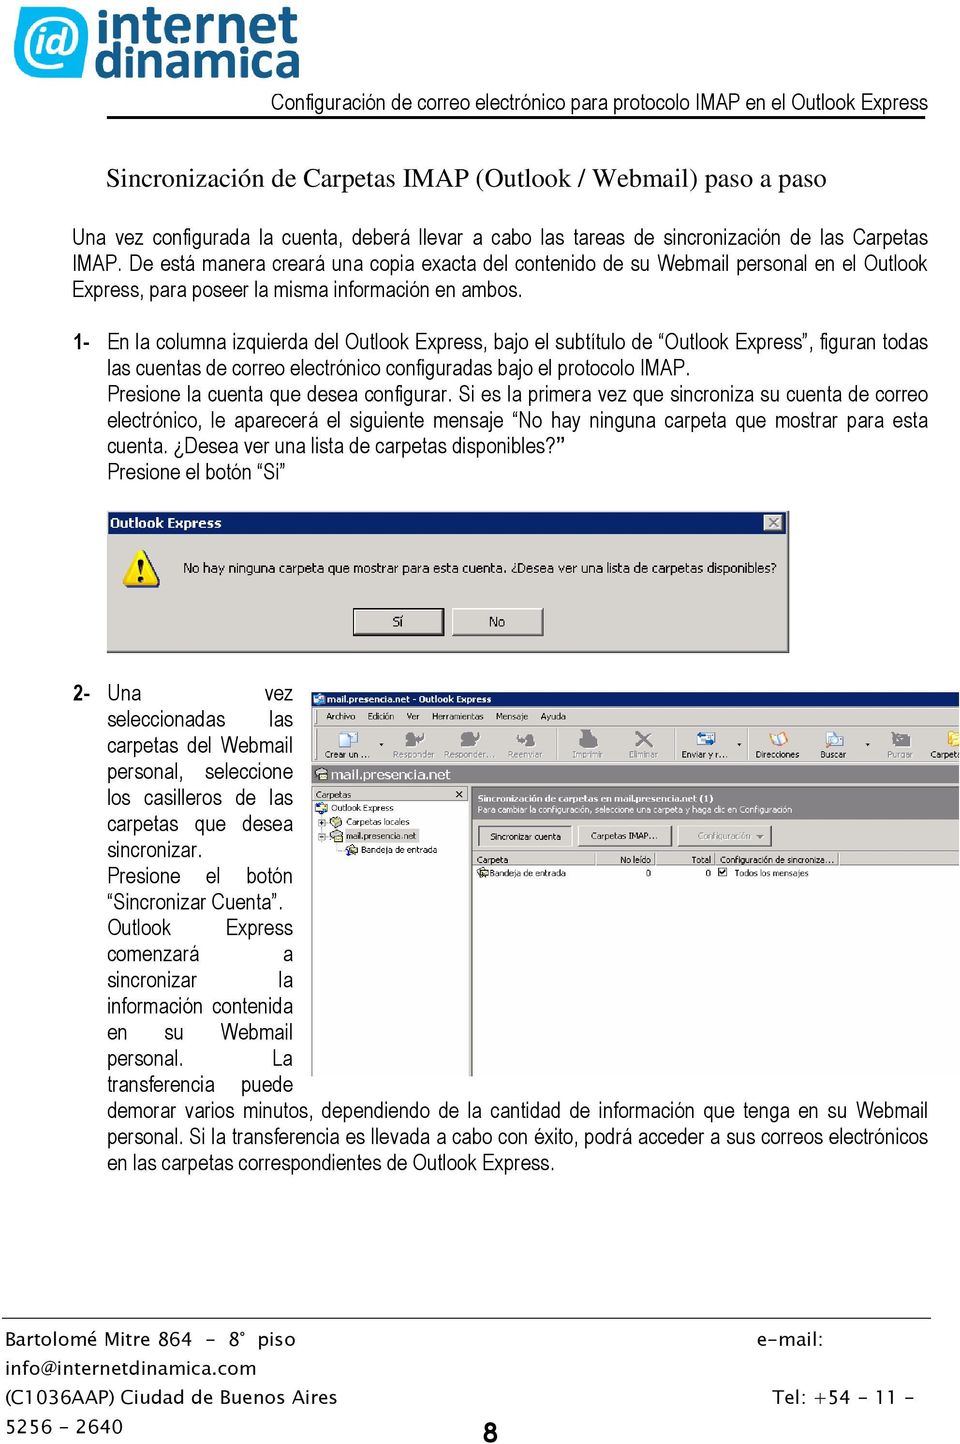 1- En la columna izquierda del Outlook Express, bajo el subtítulo de Outlook Express, figuran todas las cuentas de correo electrónico configuradas bajo el protocolo IMAP.